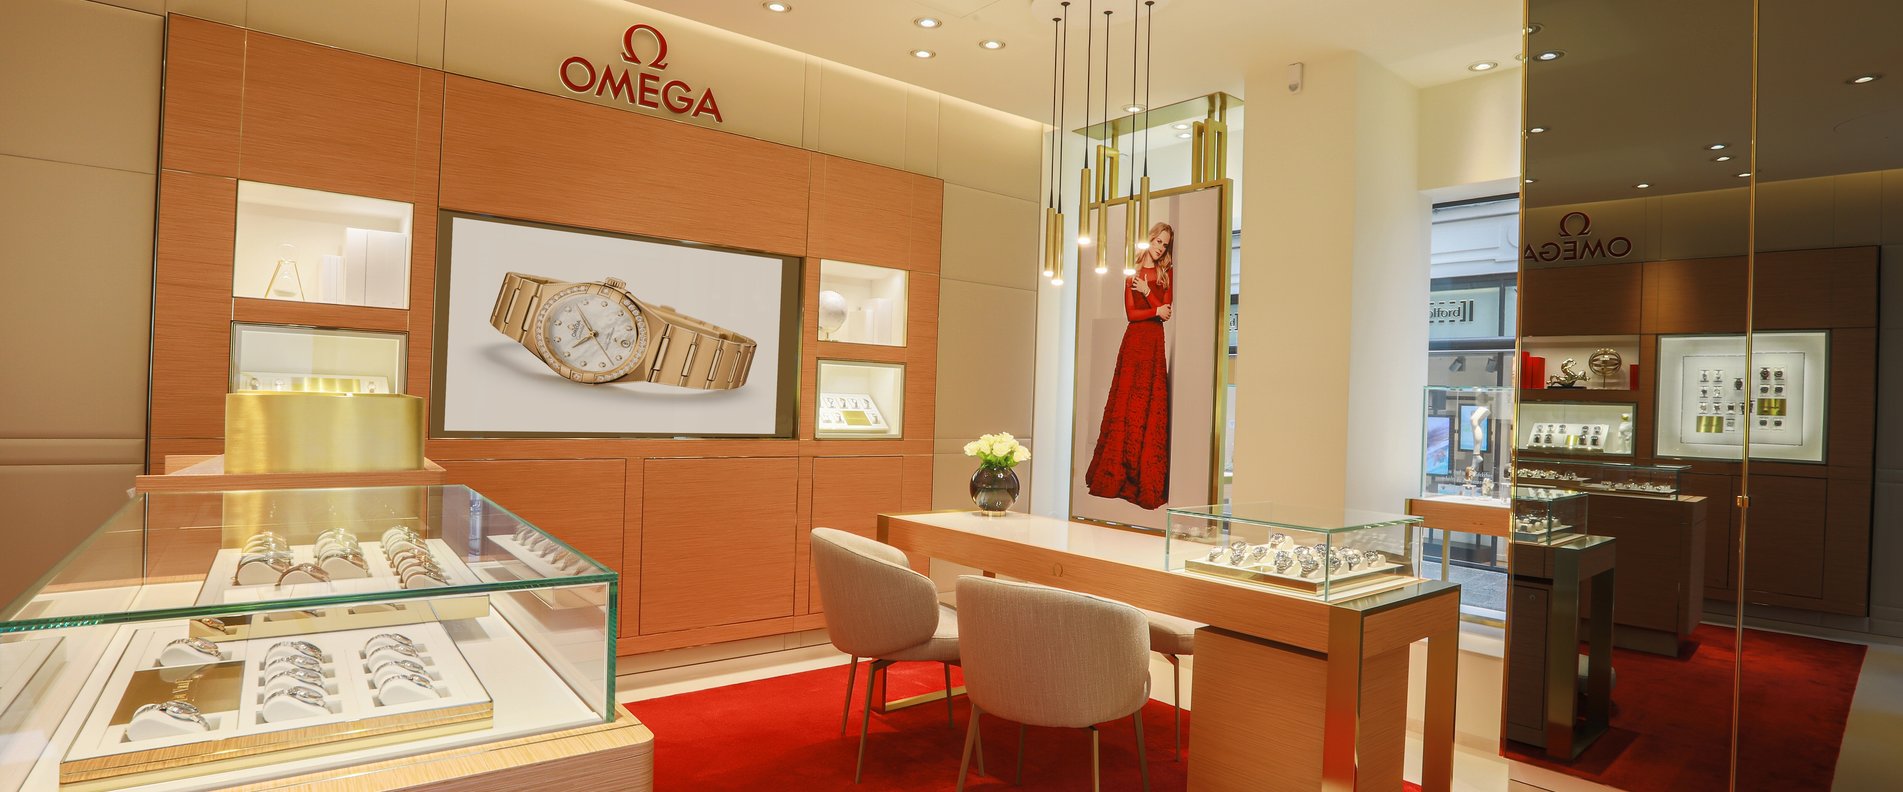 Omega Boutique | © OMEGA